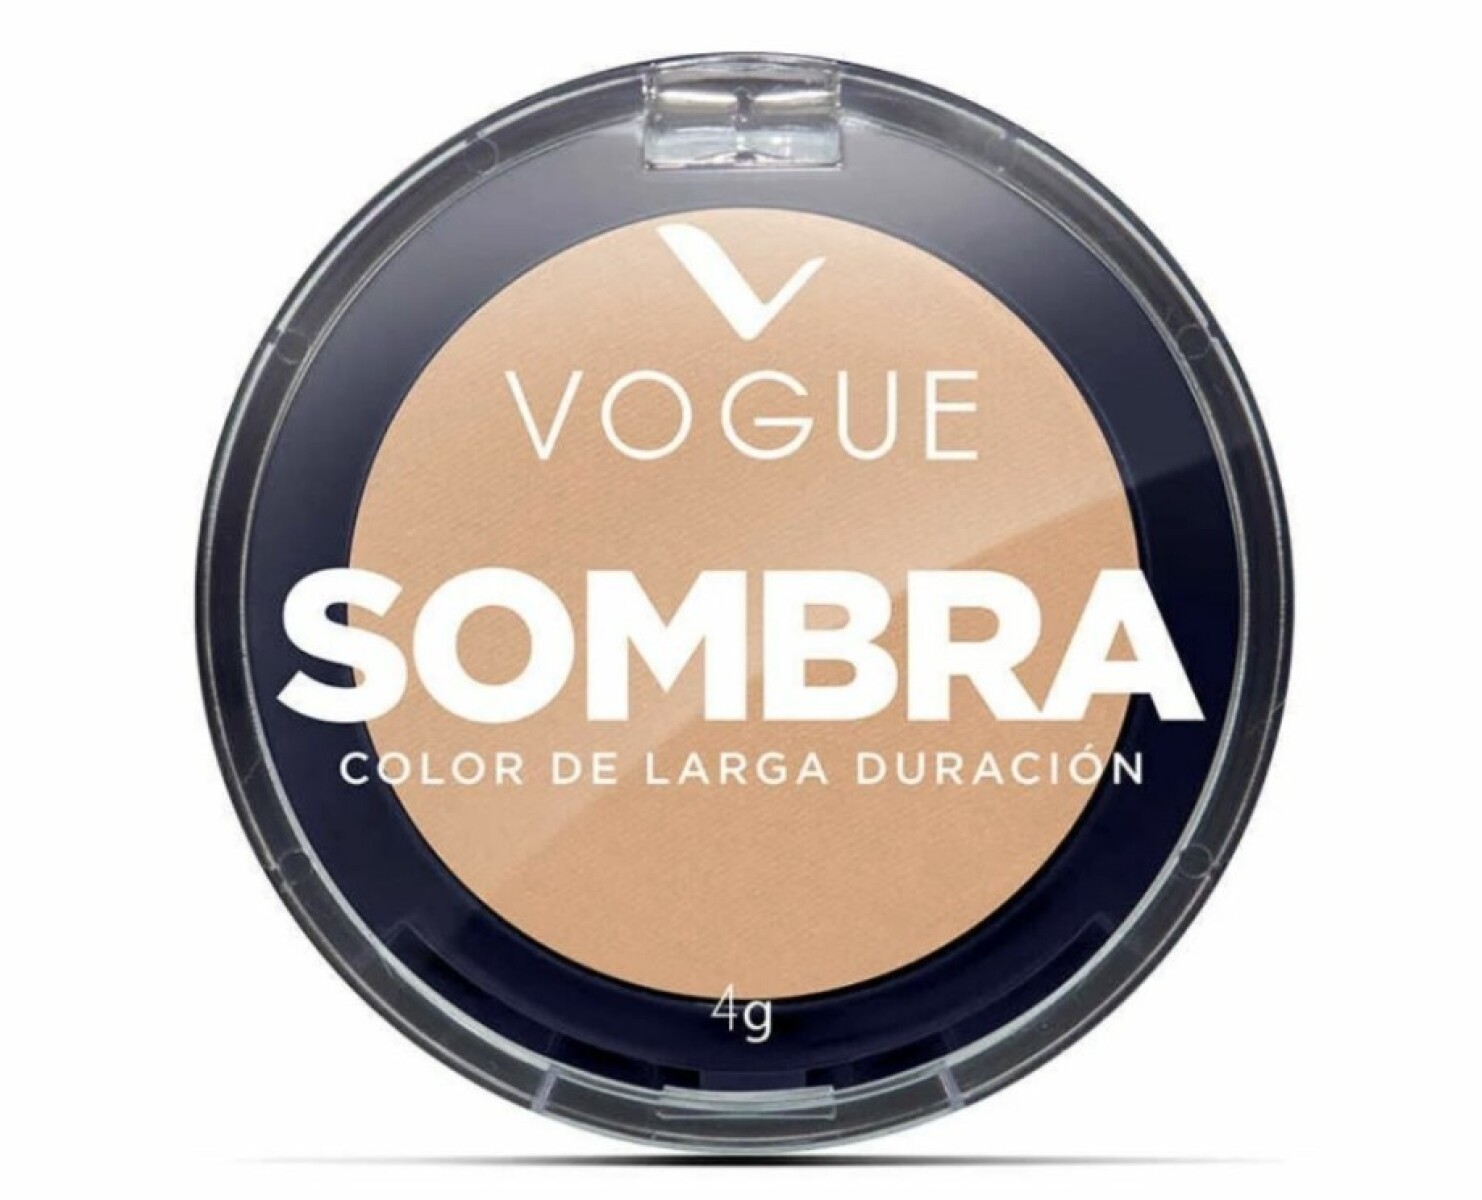 Vogue Sombra Indv Natural 4G 